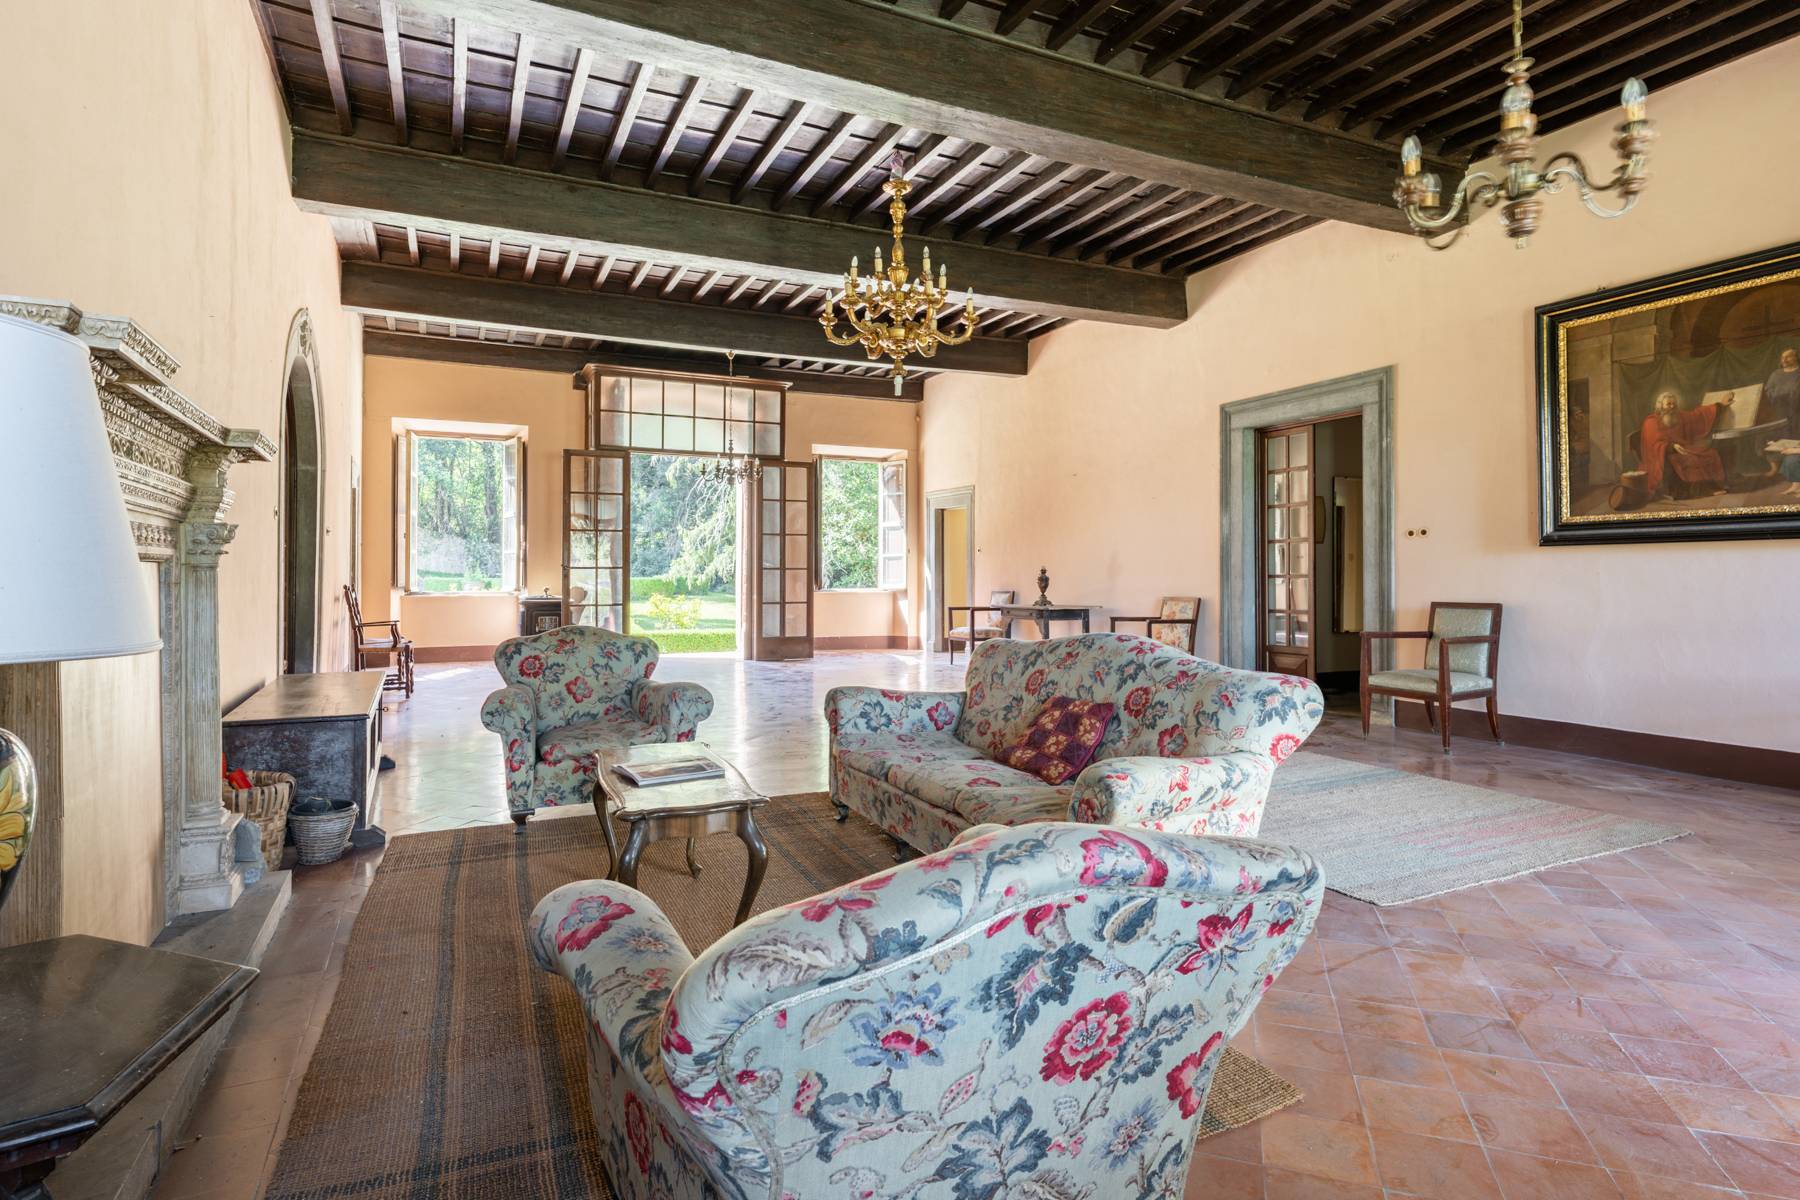 Villa in Vendita a Pescaglia: 5 locali, 2100 mq - Foto 13